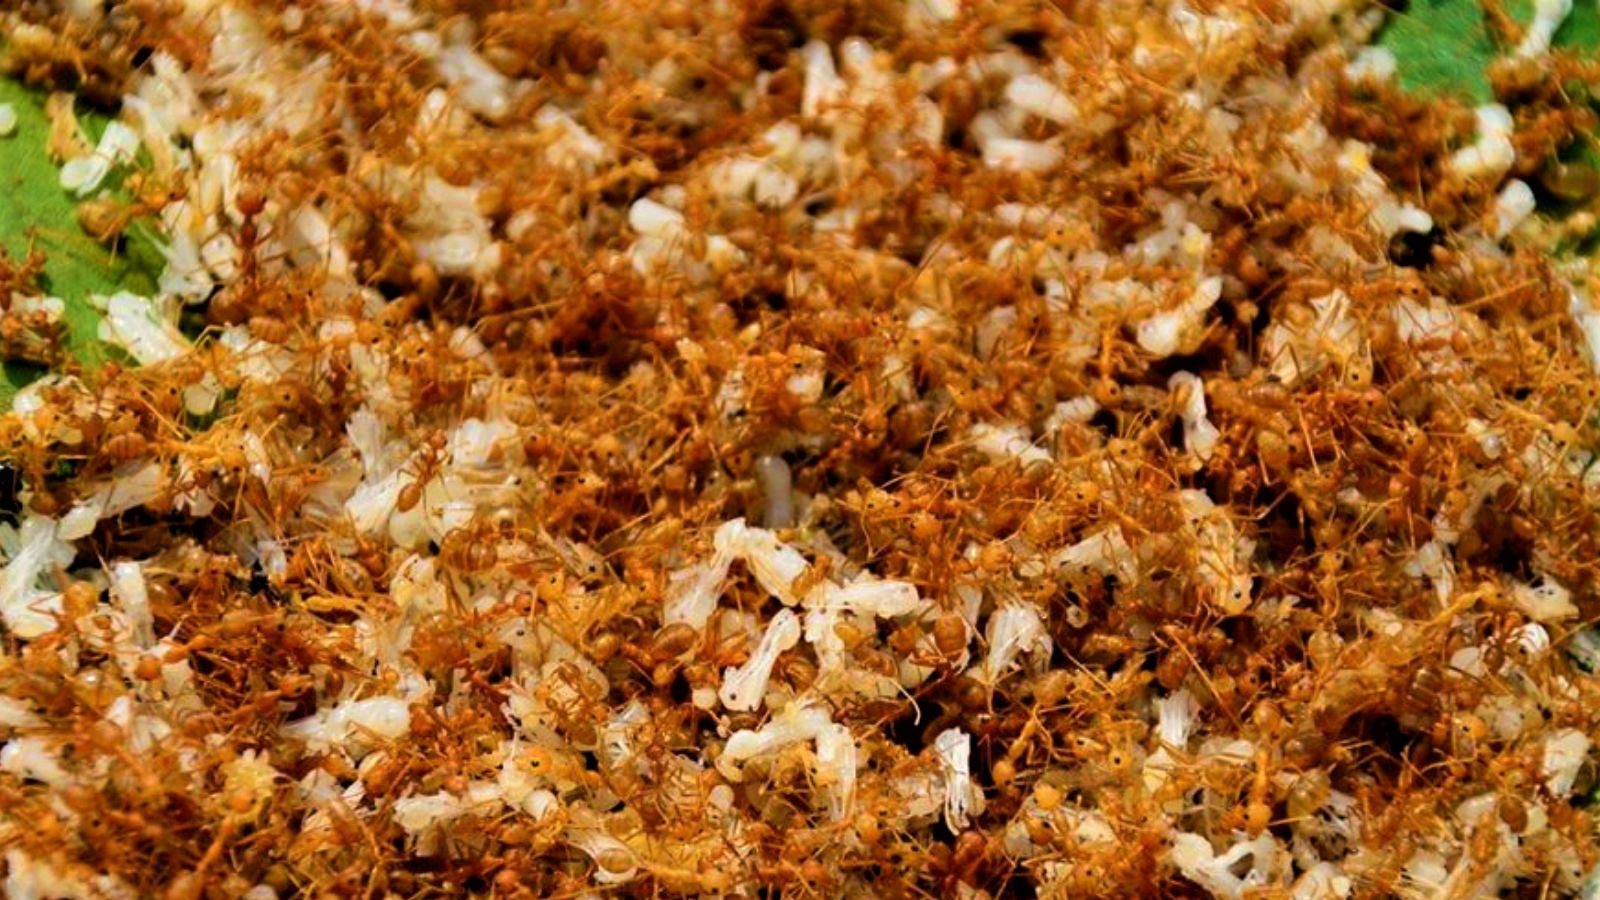 Ant Chutney: ಬಾಯಲ್ಲಿ ನೀರೂರಿಸುತ್ತಂತೆ ಇರುವೆ ಚಟ್ನಿ! ತಿಂದು ಹೇಳಿದ್ದೇನು ಫುಡ್ ಬ್ಲಾಗರ್? | ant chutney made in chhattisgarh tasted by food blogger– News18 Kannada